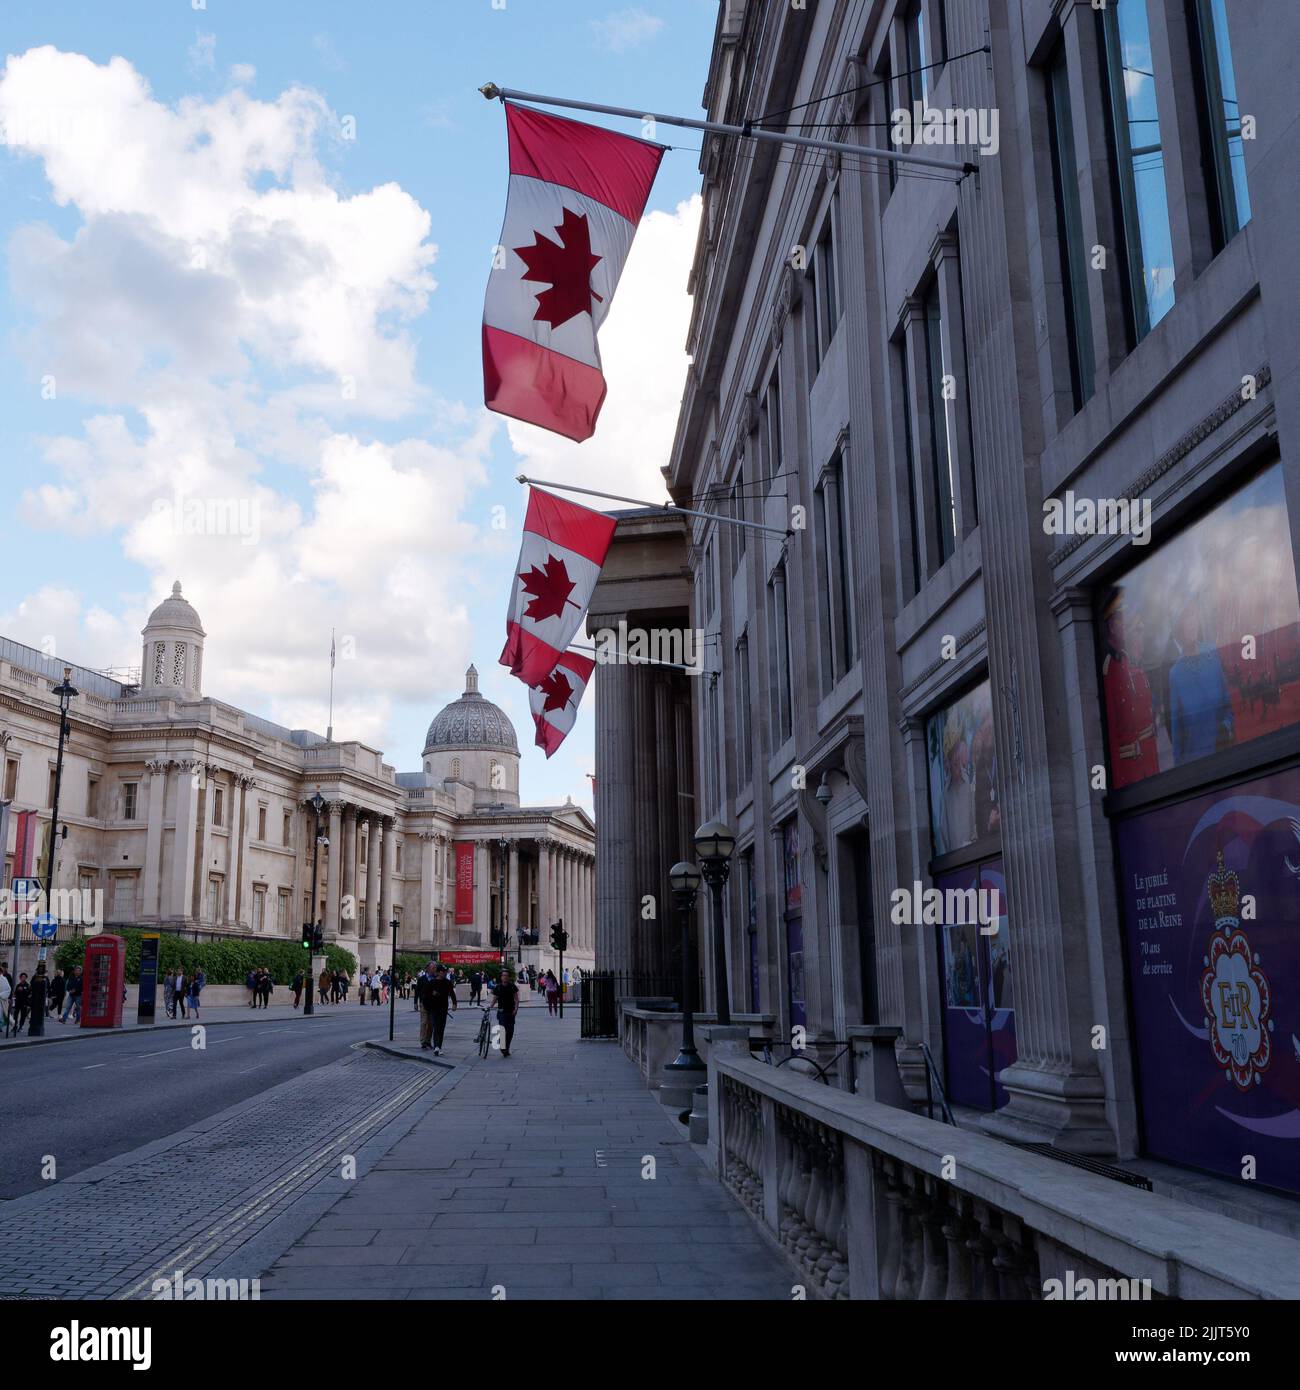 Londra, Grande Londra, Inghilterra, giugno 30 2022: Bandiere canadesi fuori dall'Ambasciata canadese con la Galleria Nazionale sullo sfondo. Foto Stock